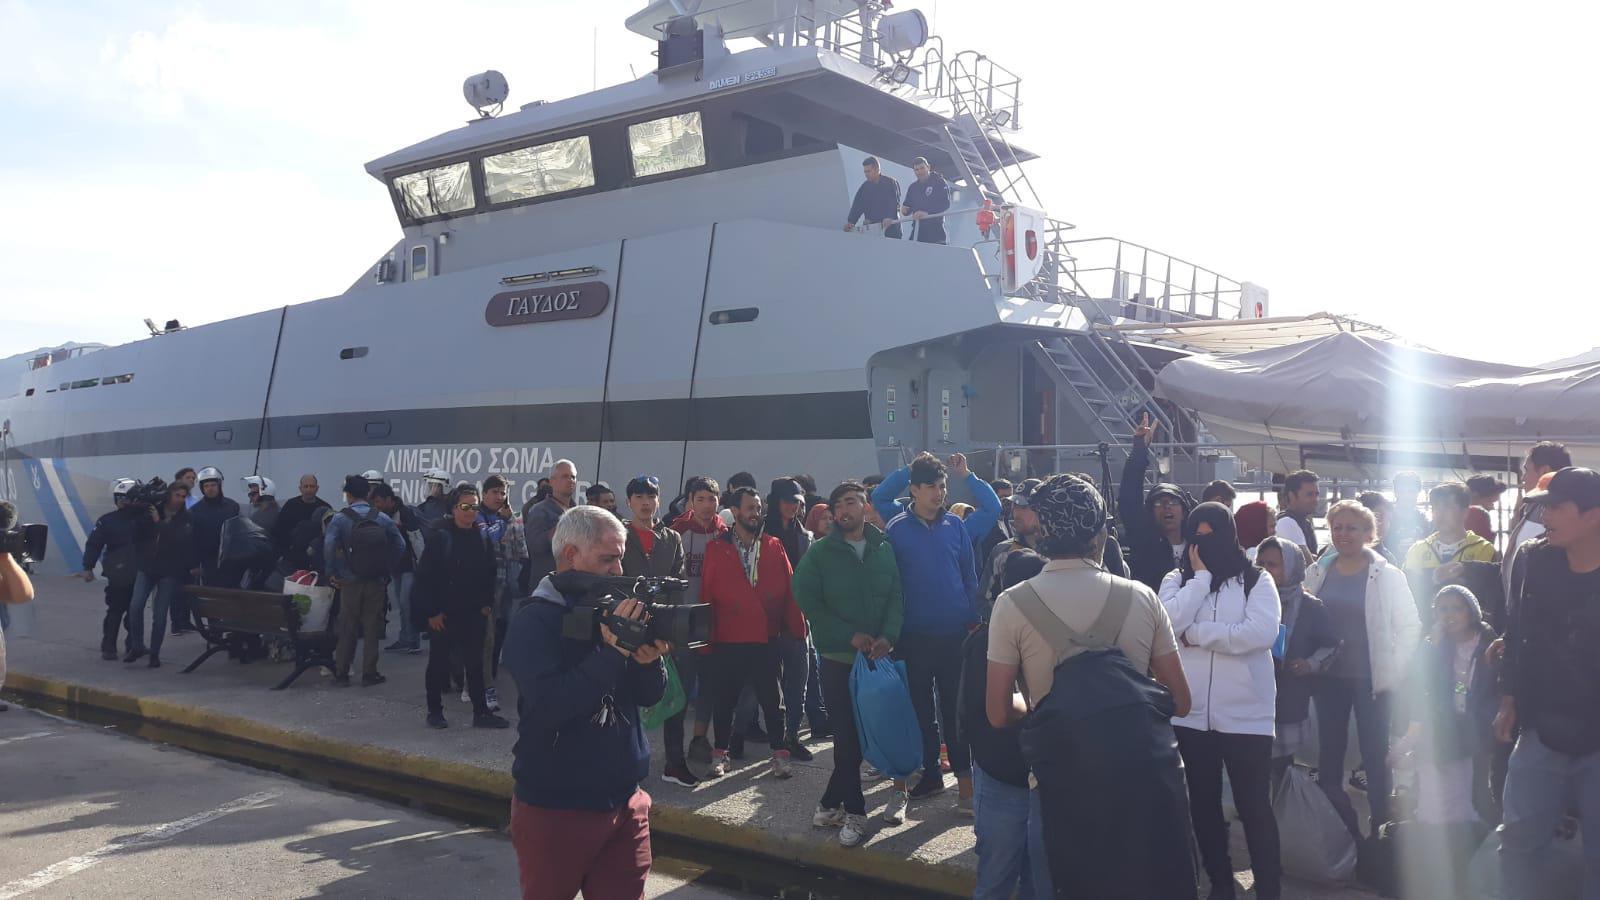 Göçmenler için Atinaya gemi kalkacağı iddiasını duyanlar iskeleye akın etti